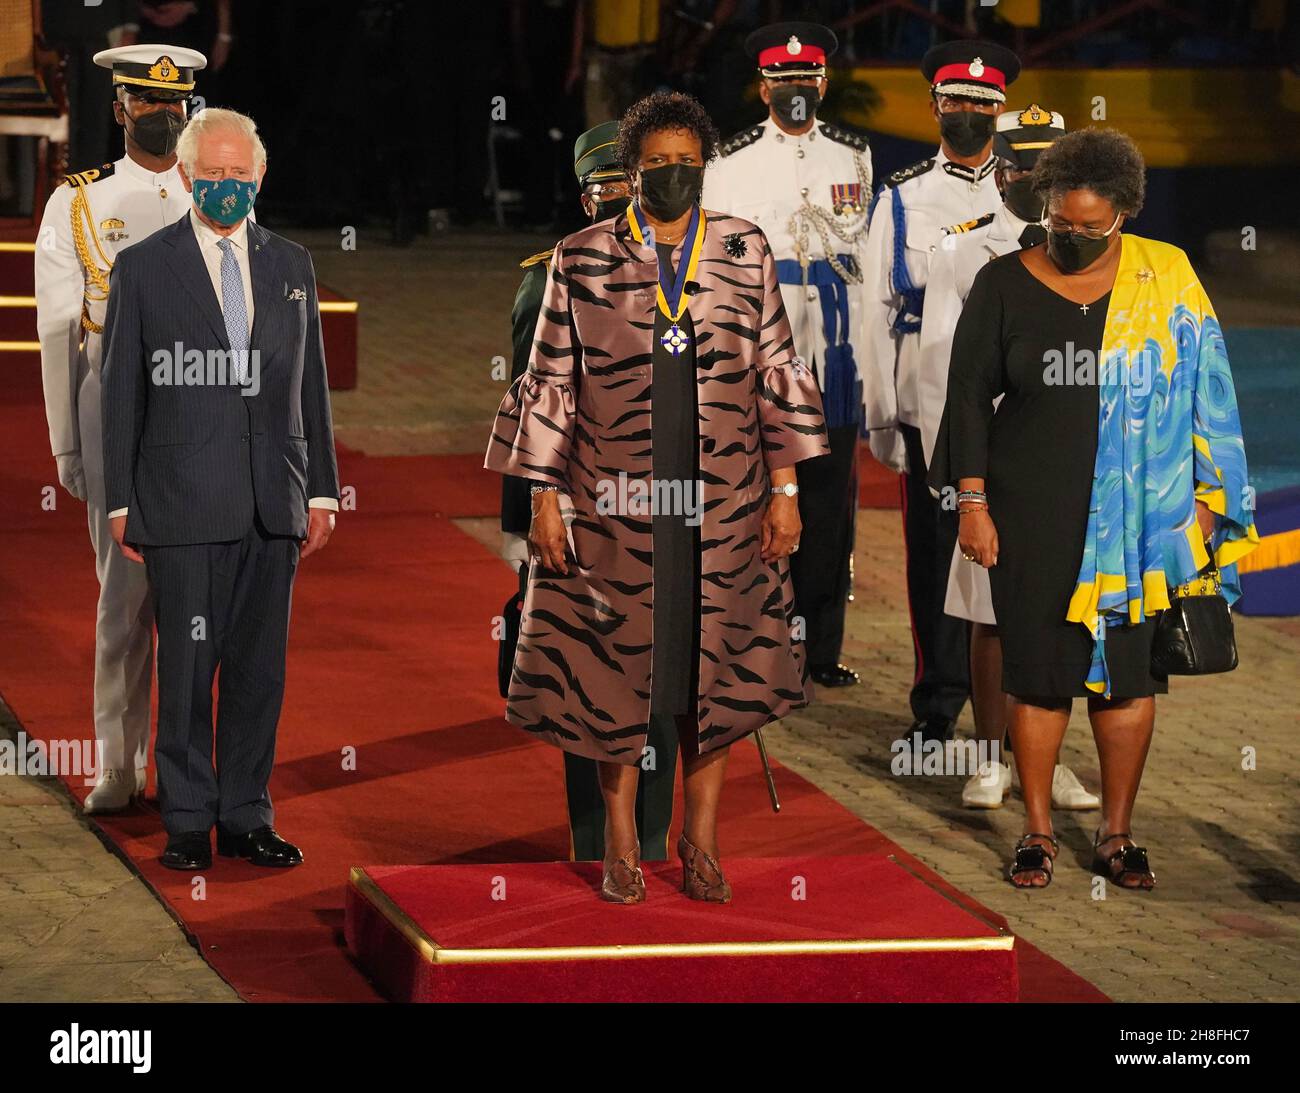 Der Prinz von Wales (links) wird von der Präsidentin von Barbados, Sandra Mason (Mitte), und der Premierministerin von Barbados, Mia Mottley (rechts), begleitet, als sie sich nach einer Zeremonie zur Feier des Übergangs des Landes zu einer republik innerhalb des Commonwealth auf den Heroes Square in Bridgetown Barbados vorbereiten. Bilddatum: Dienstag, 30. November 2021. Stockfoto